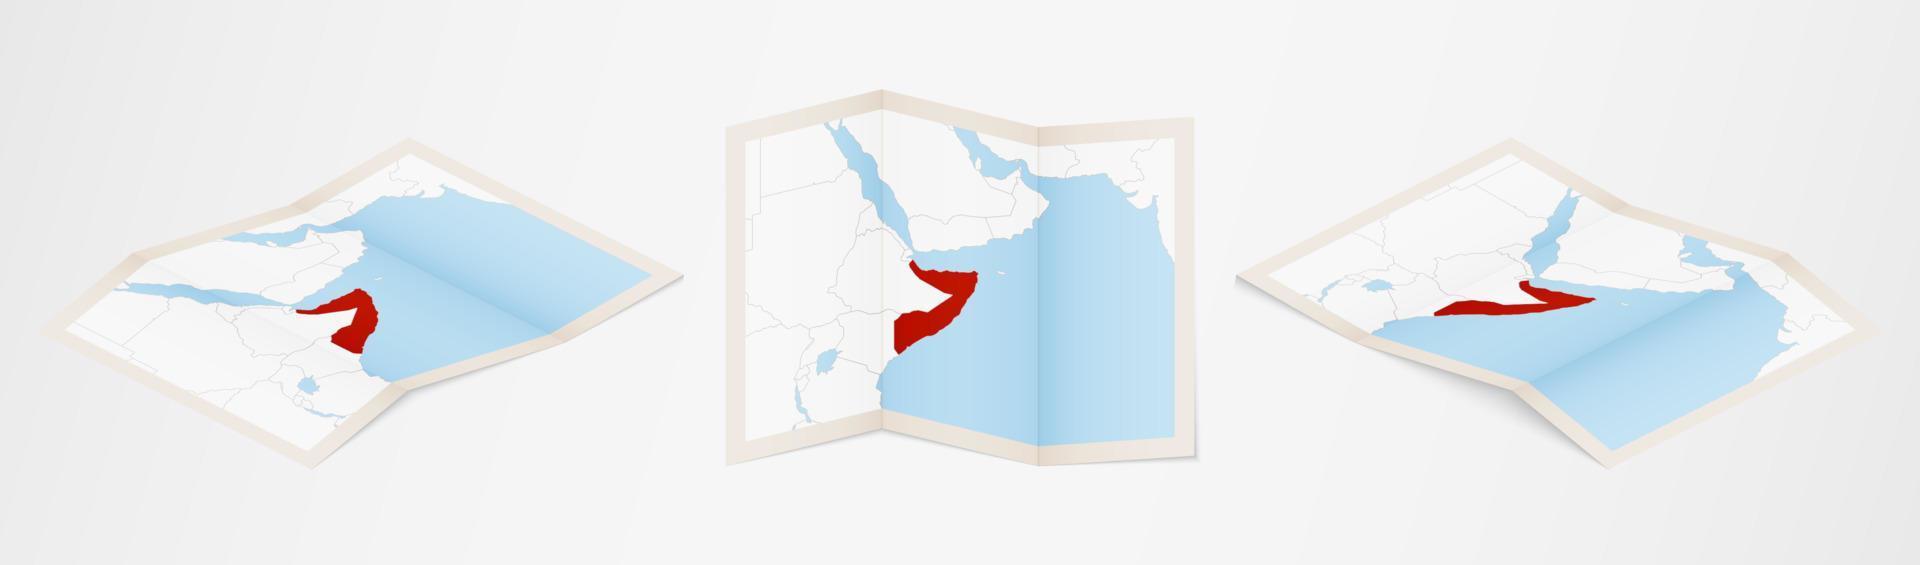 mapa dobrado da Somália em três versões diferentes. vetor